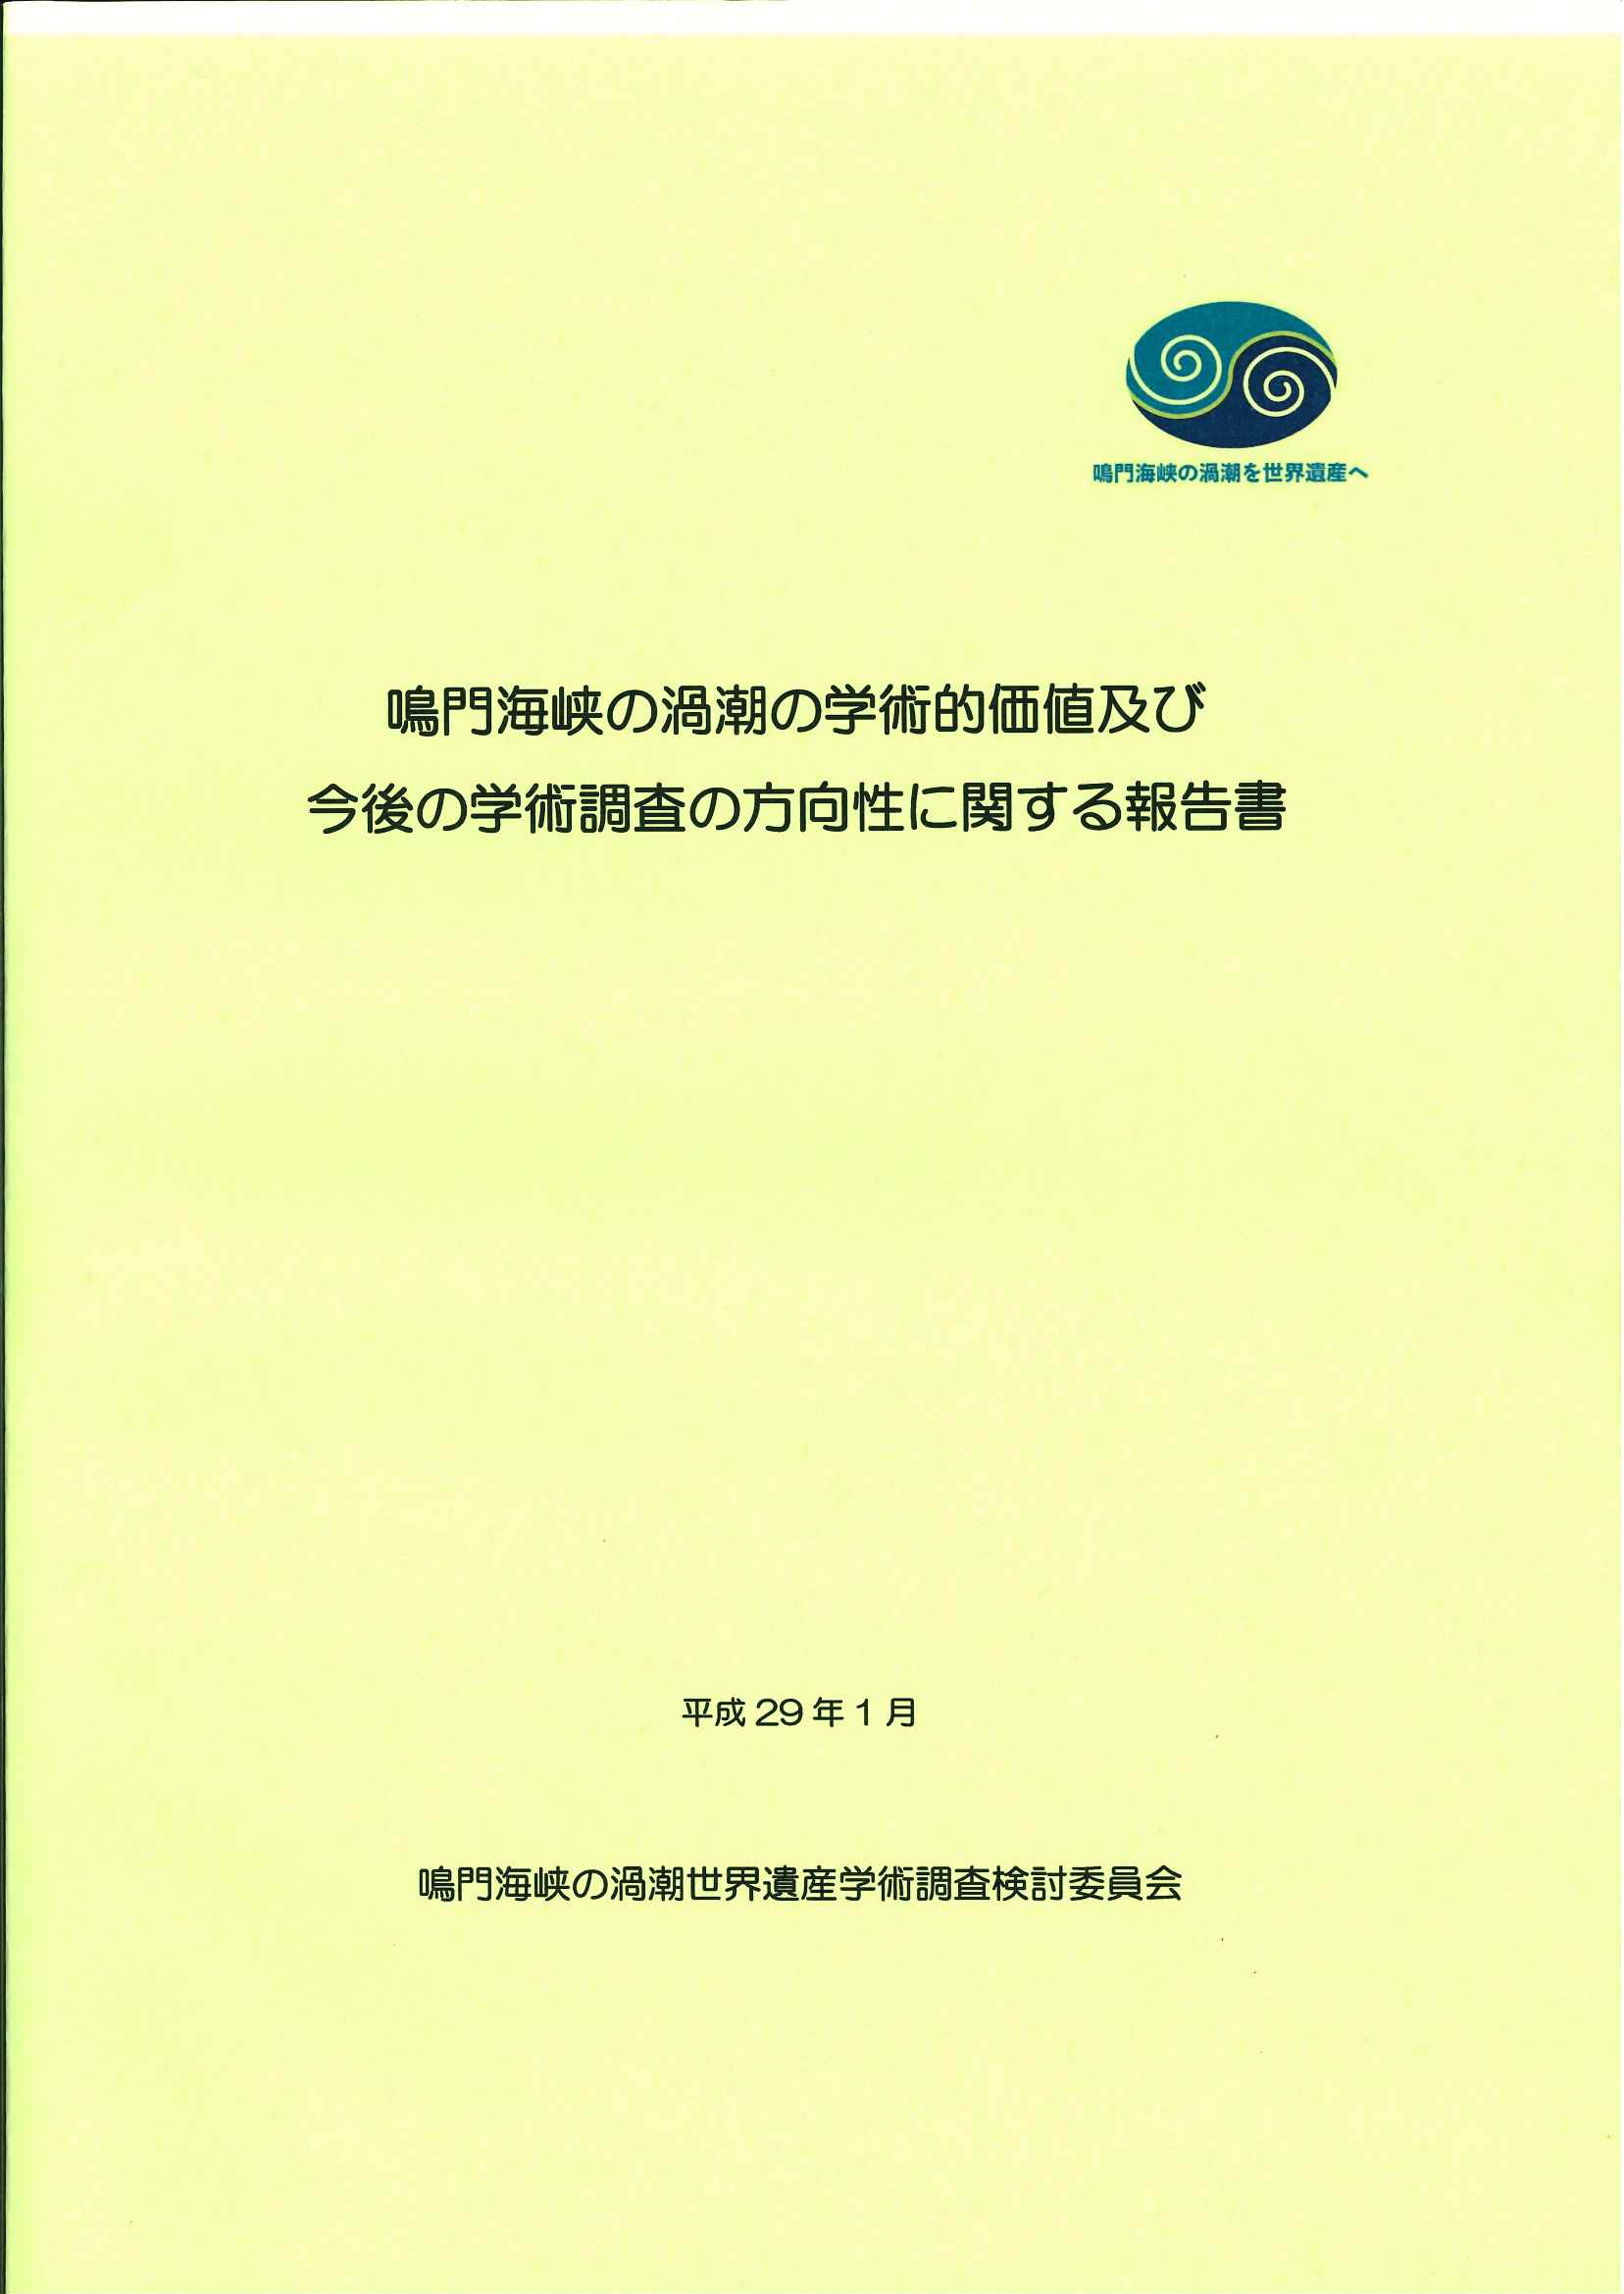 「鳴門海峡の渦潮の学術的価値及び今後の学術調査の方向性に関する報告書」の発行について